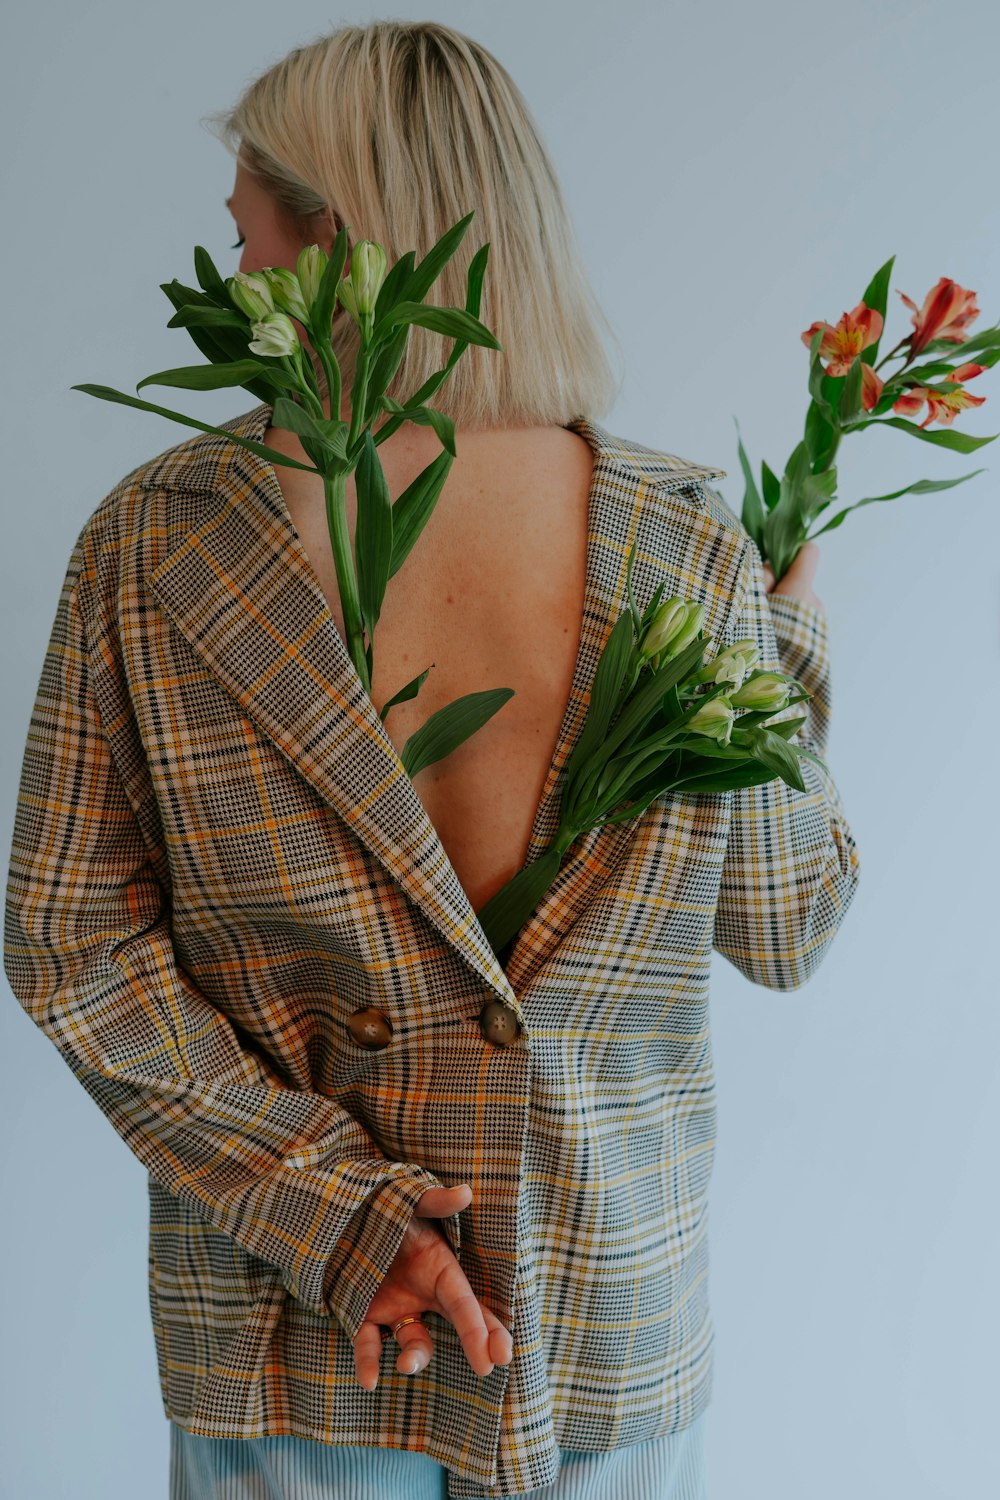 eine Frau in einer karierten Jacke, die Blumen hält